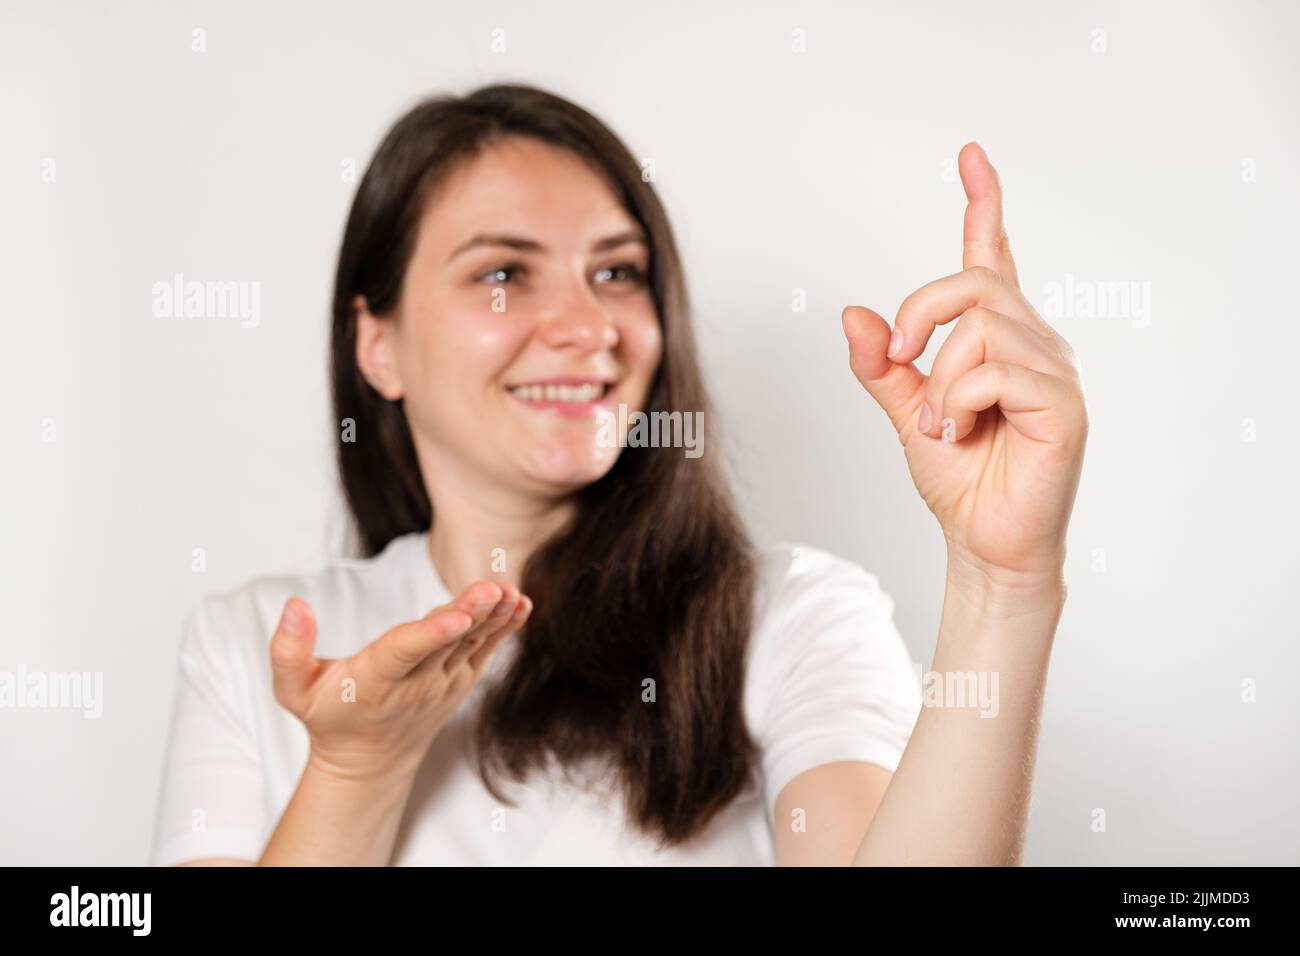 Una donna mostra un'insolita capacità di piegare il dito in una sola articolazione. Foto Stock